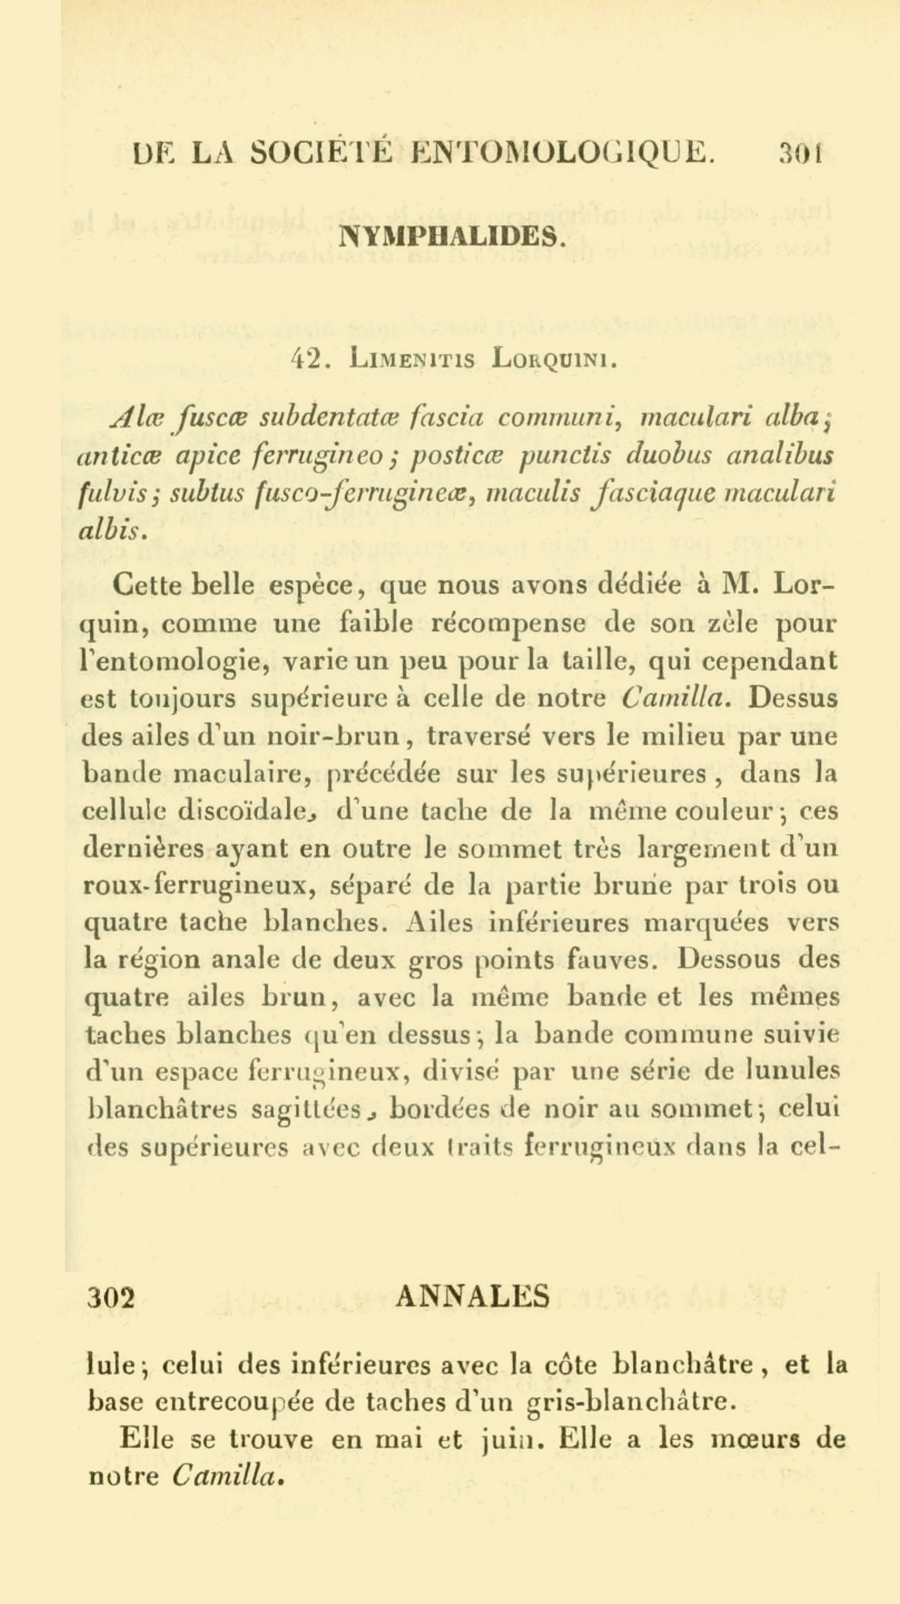 Original description of Limenitis lorquini - Lorquin's Admiral